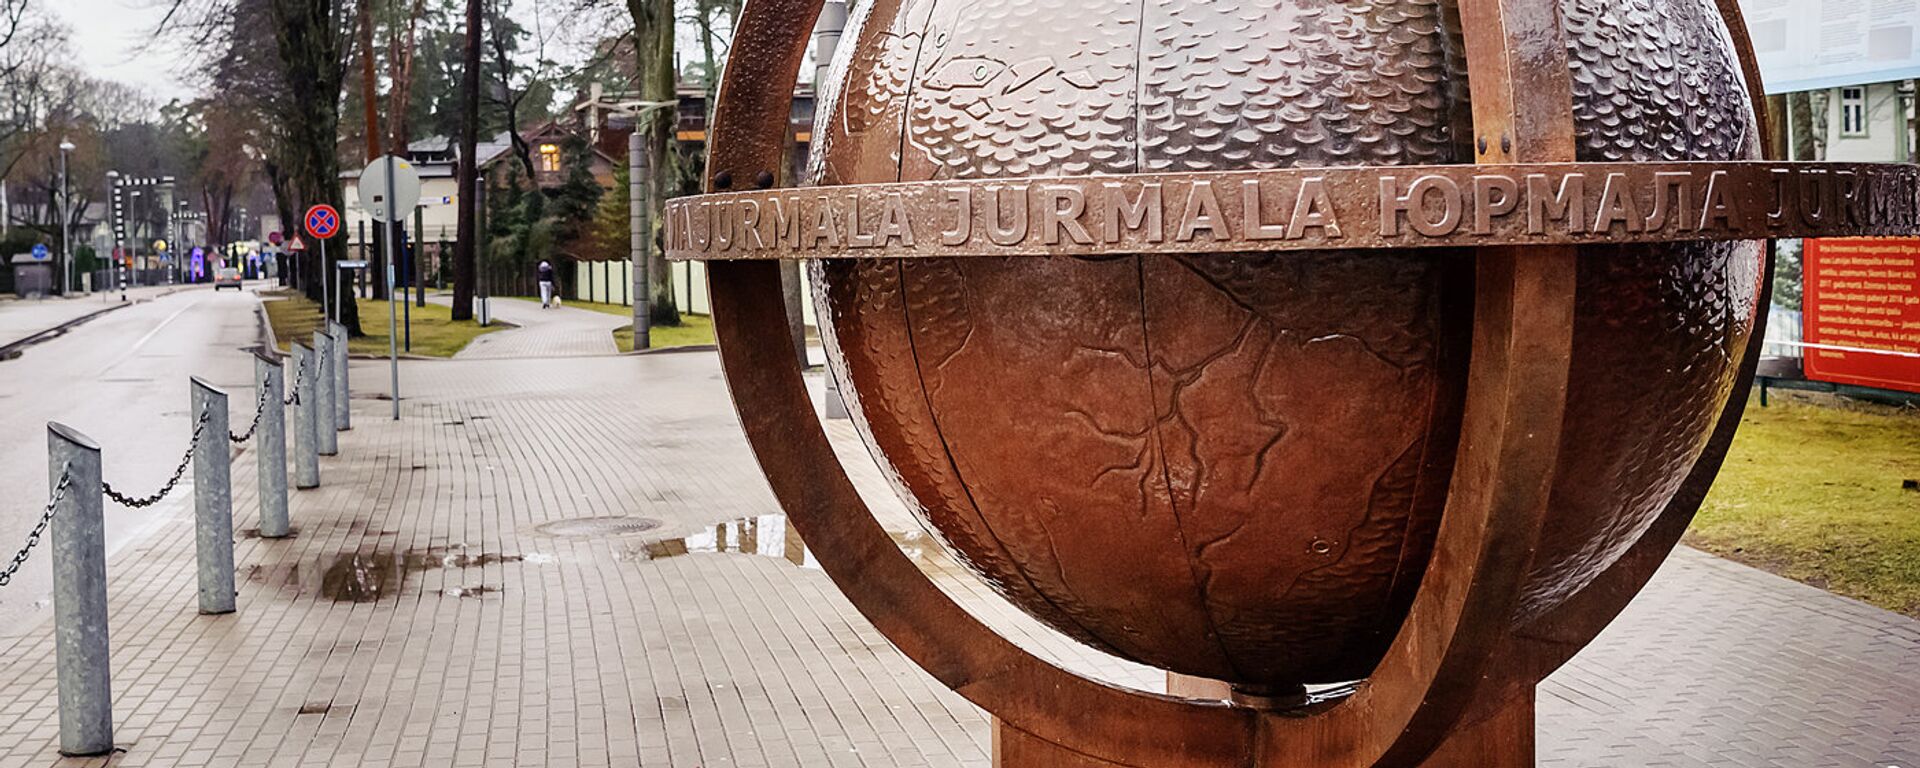 Юрмальский глобус на улице Йомас - Sputnik Латвия, 1920, 18.12.2021